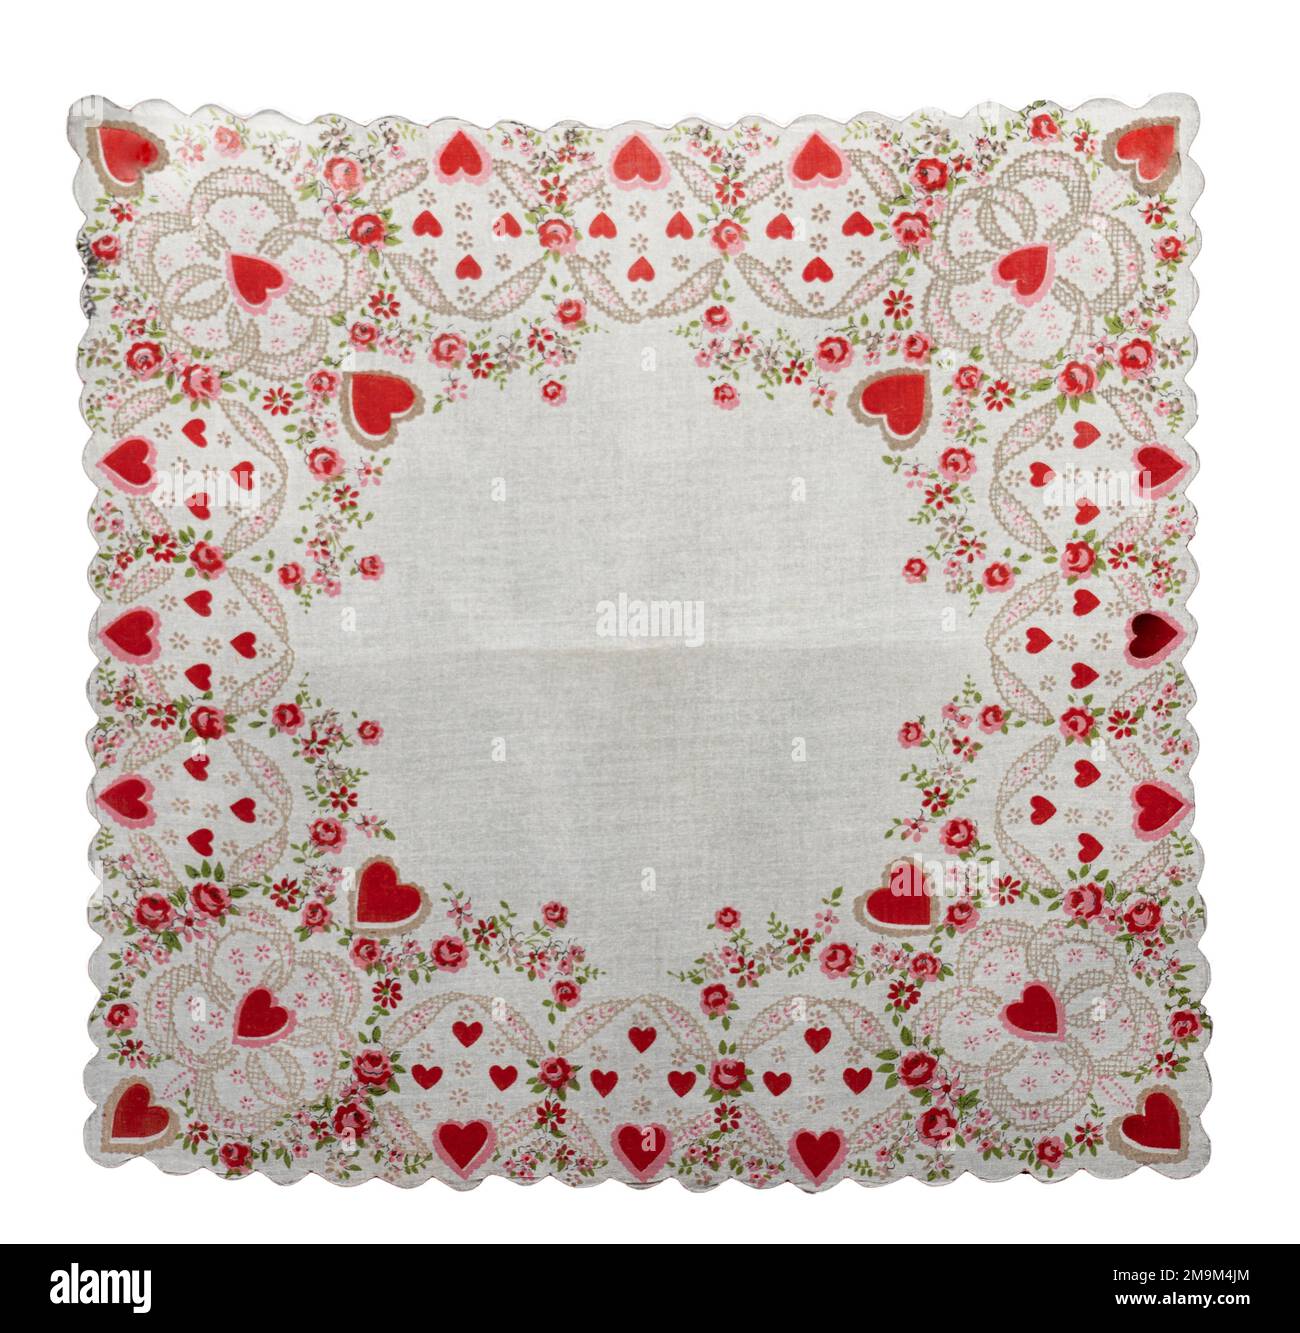 Fazzoletto rosso hanky isolato con spazio di testo centrato ha cuori e fiori bordo con bordi di capesante. Il design è un giorno di San Valentino d'epoca per te. Foto Stock